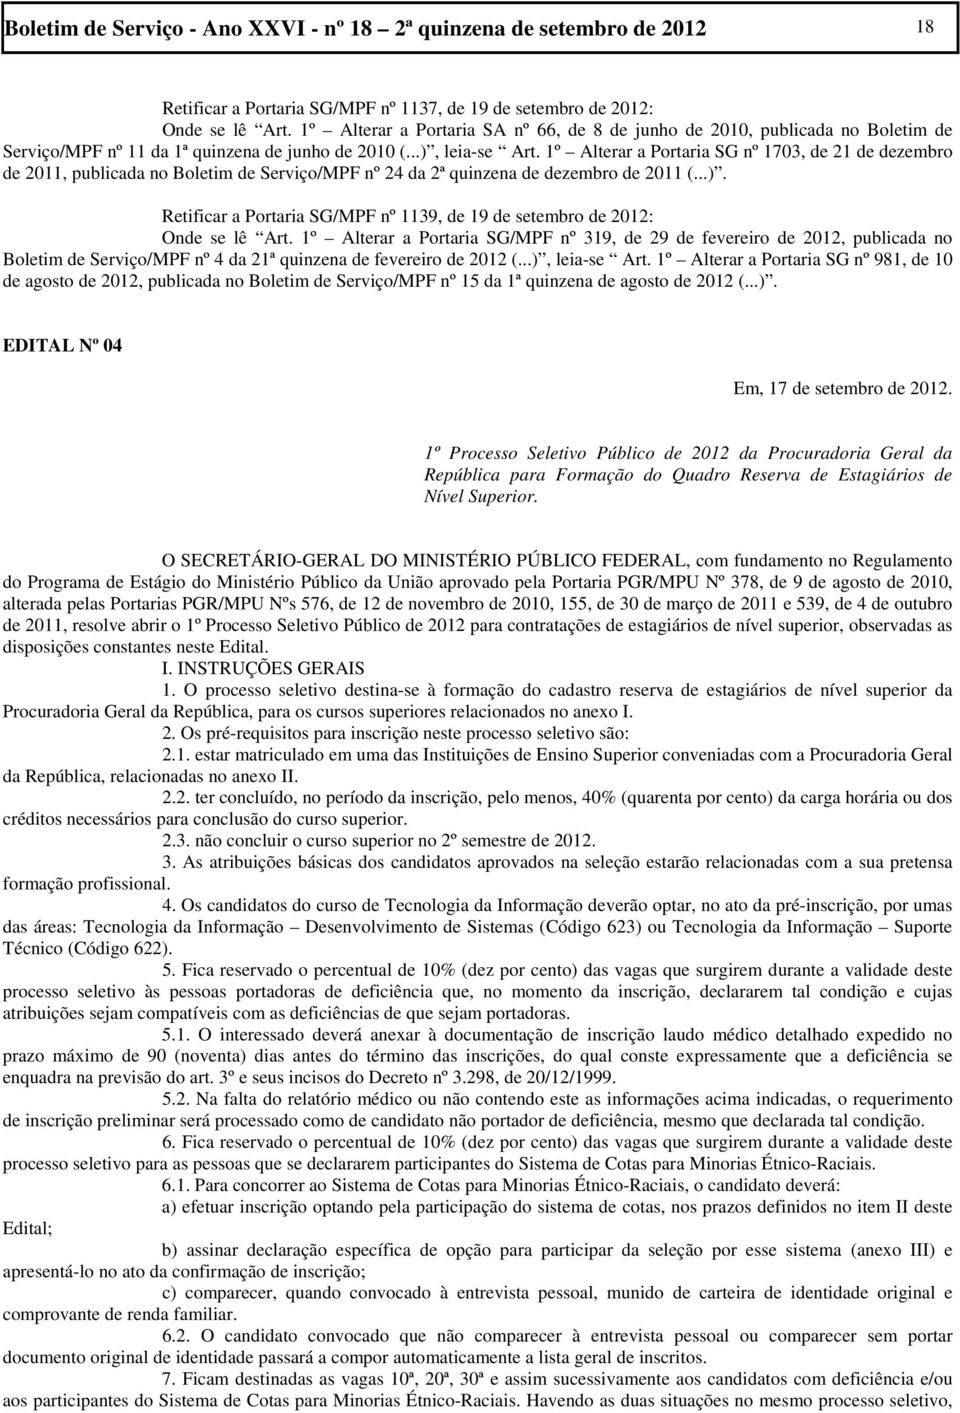 1º Alterar a Portaria SG nº 1703, de 21 de dezembro de 2011, publicada no Boletim de Serviço/MPF nº 24 da 2ª quinzena de dezembro de 2011 (...).